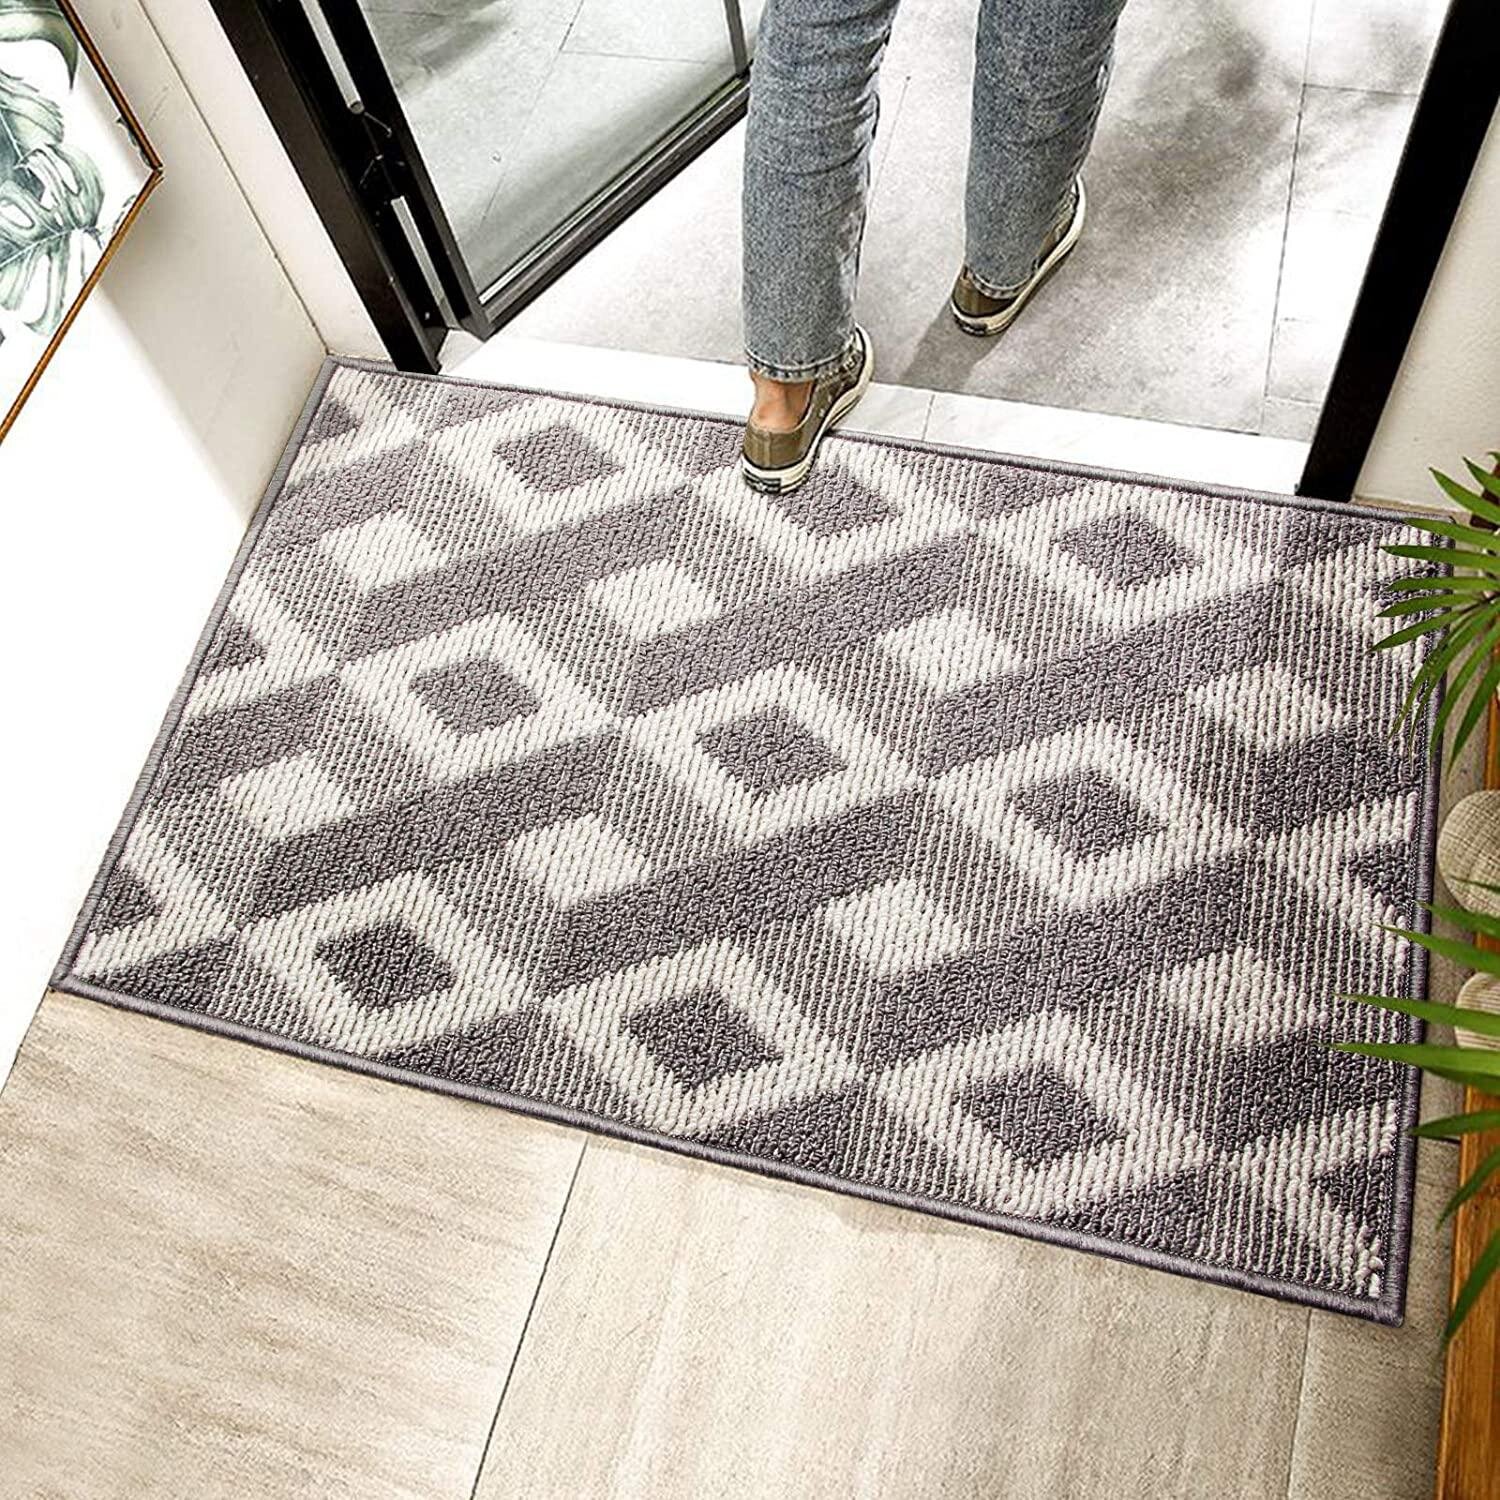 Outdoor Indoor Floor Mat Entrance Home Doormat Welcome Non Slip Rug Front Door 